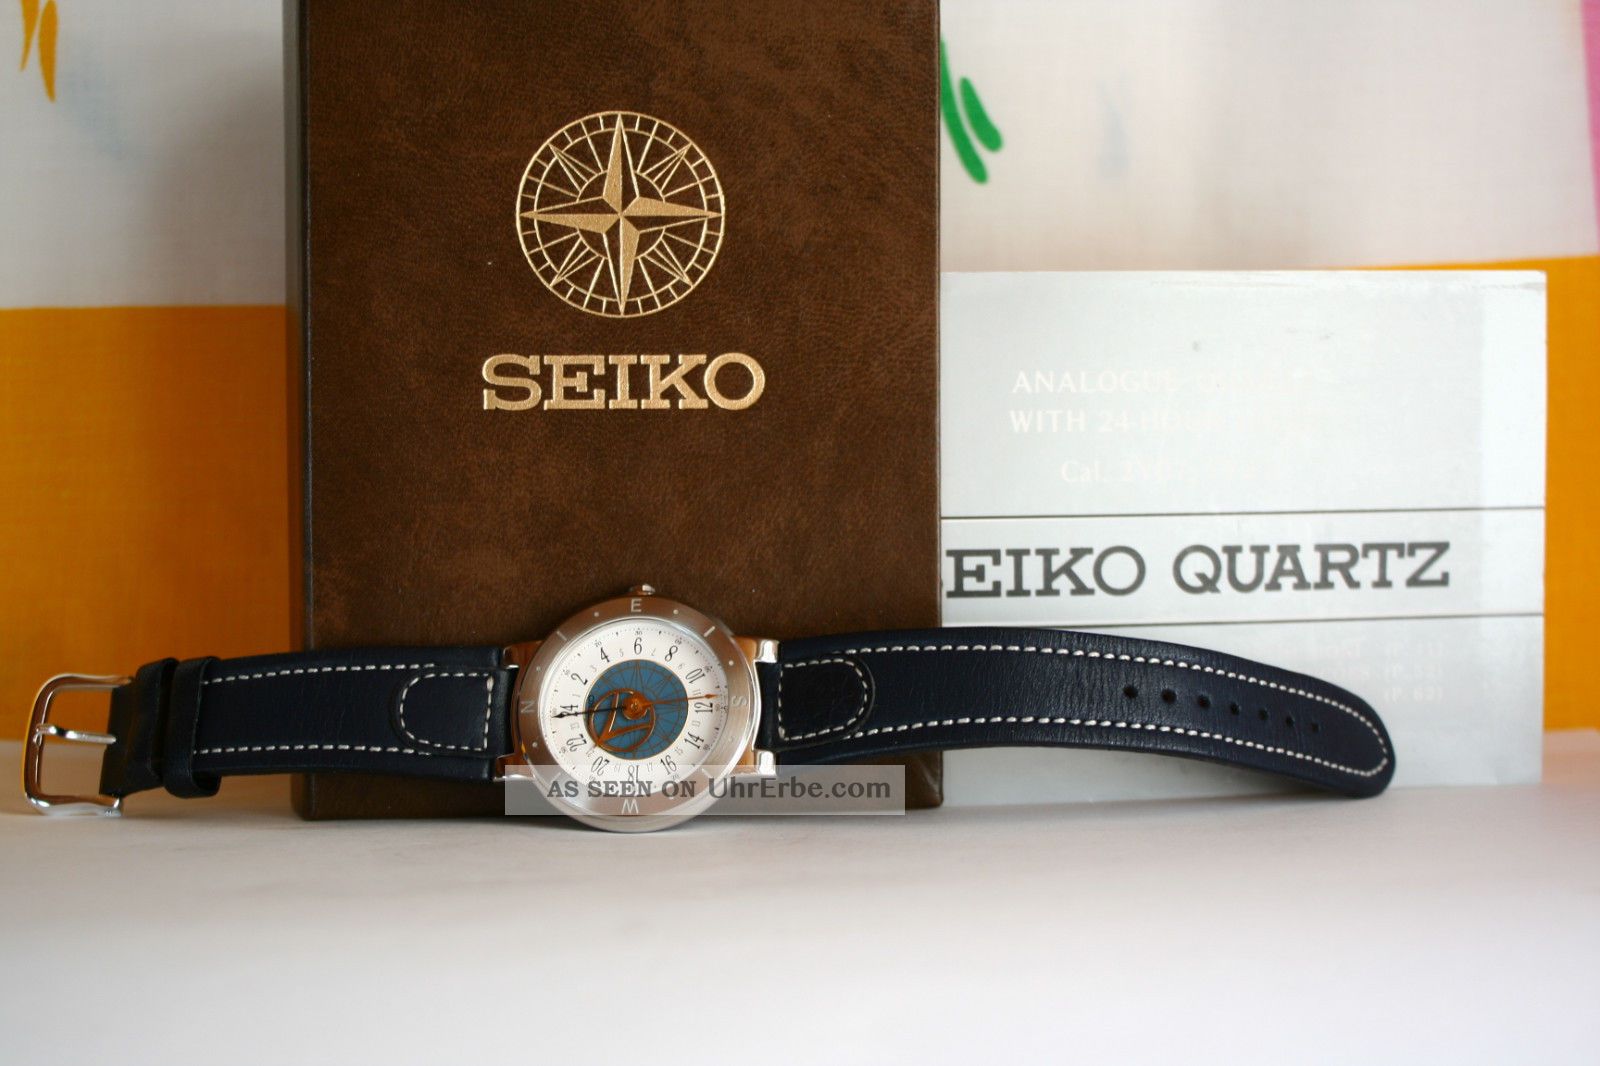 Seiko Herrenuhr Analogue Quartz 5y37 983170 Nicht Funktionstüchtig Armbanduhren Bild